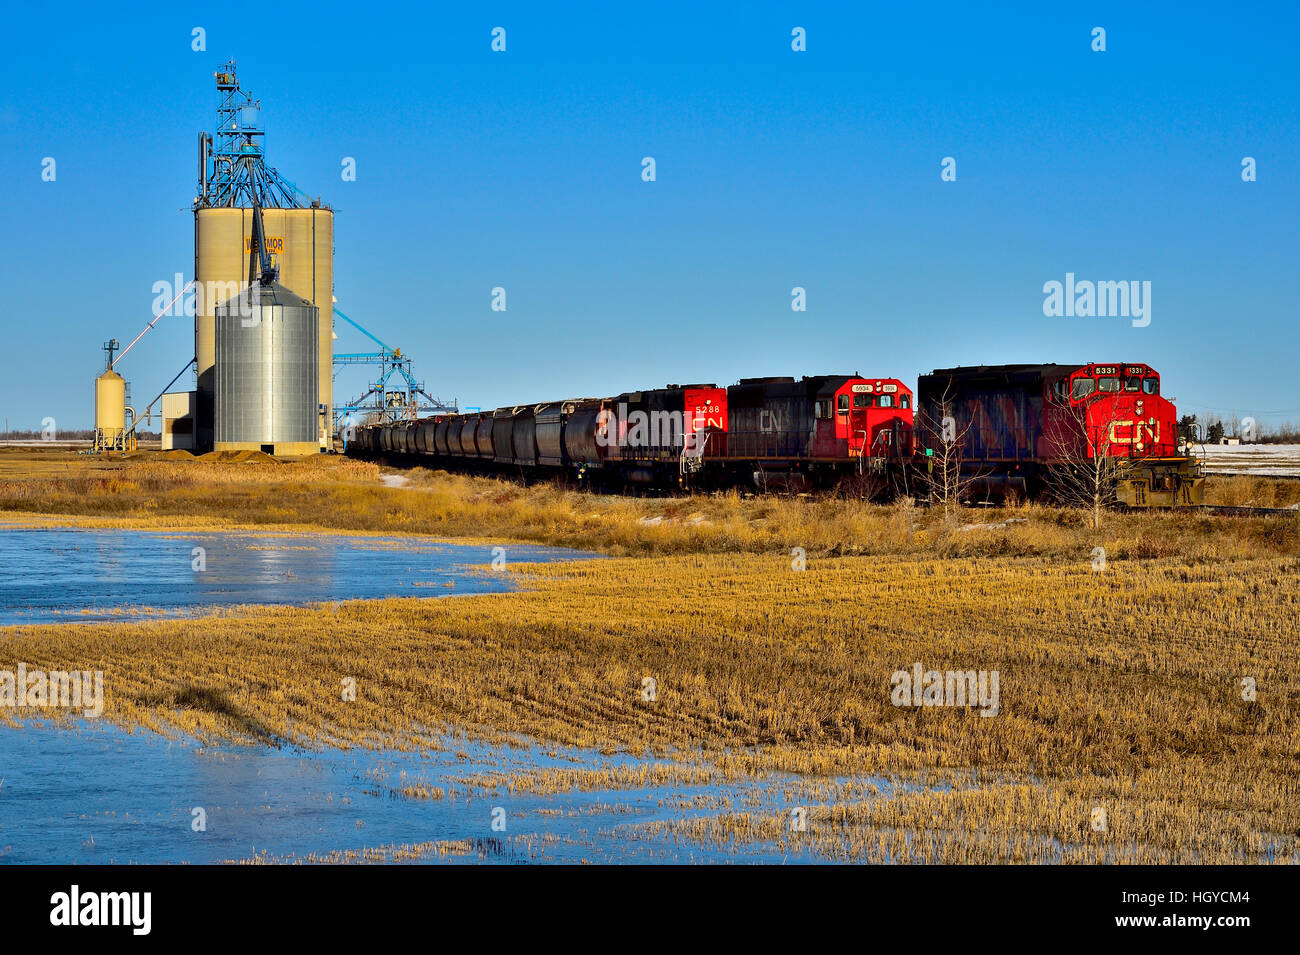 Un train de marchandises du Canadien National loading grain de la borne du stockage du grain à Morinville, Alberta, Canada. Banque D'Images